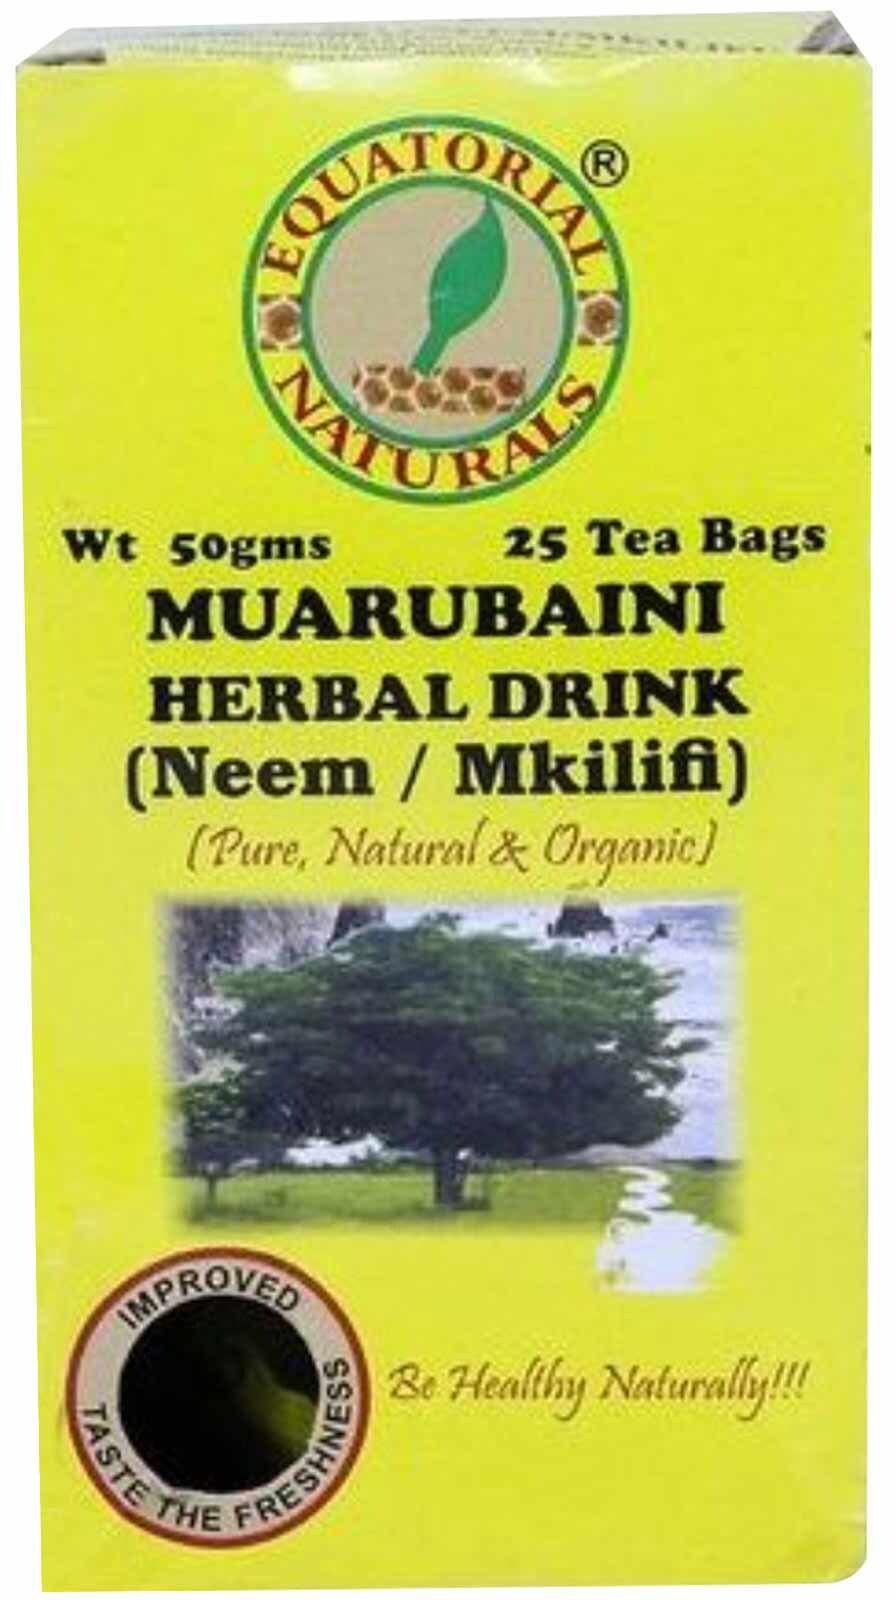 Equatorial Natural Herbal Drink Muarubaini Tea Bags 50g